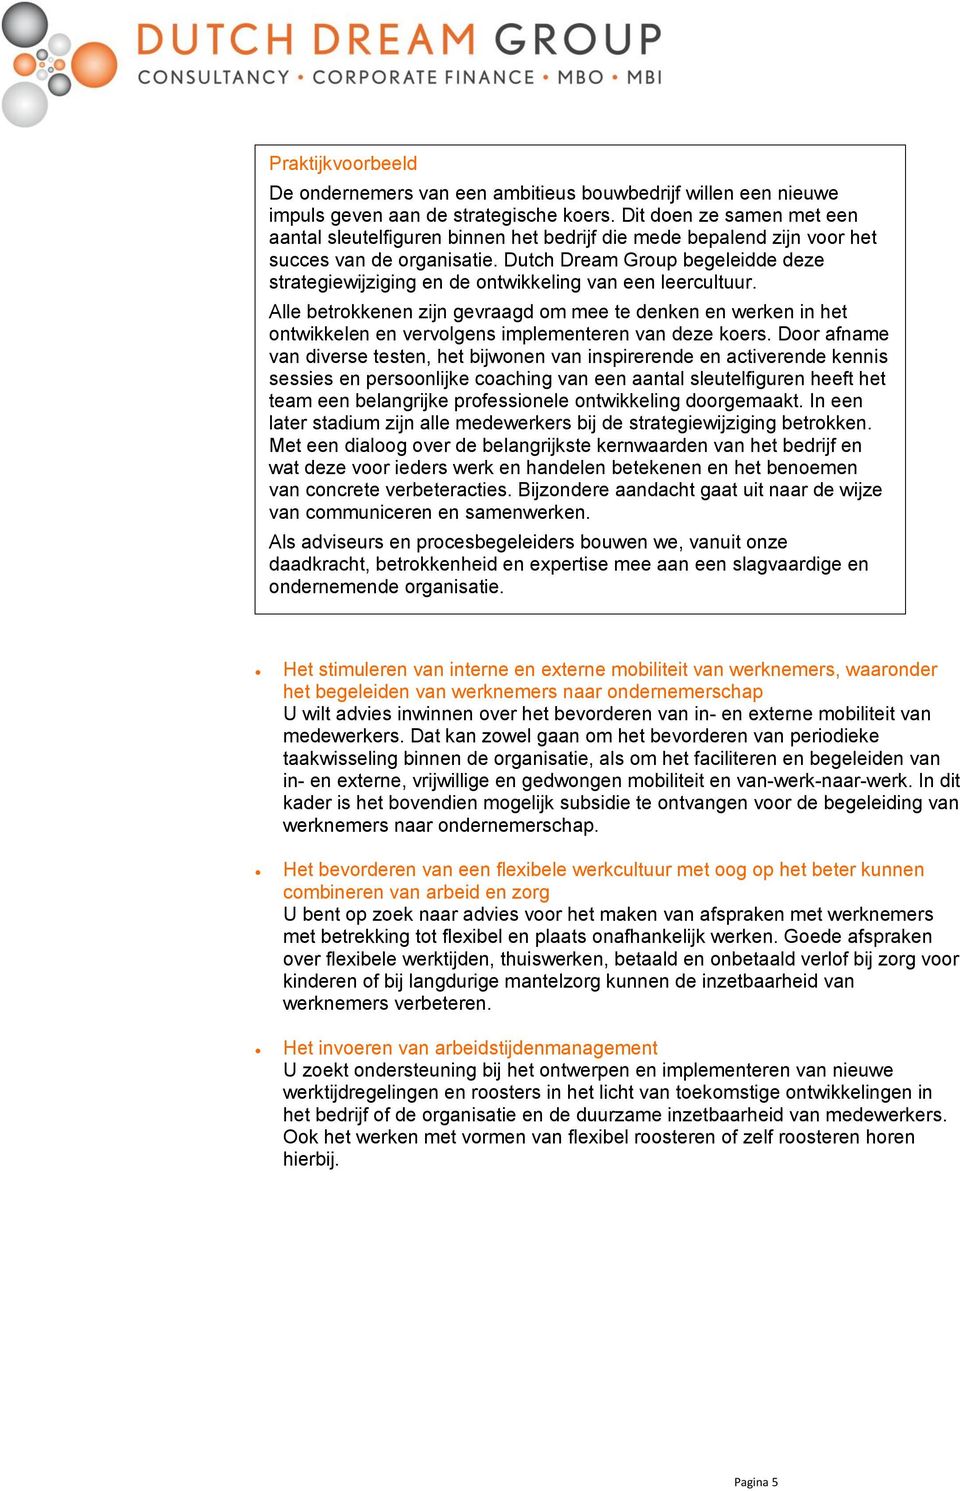 Dutch Dream Group begeleidde deze strategiewijziging en de ontwikkeling van een leercultuur.